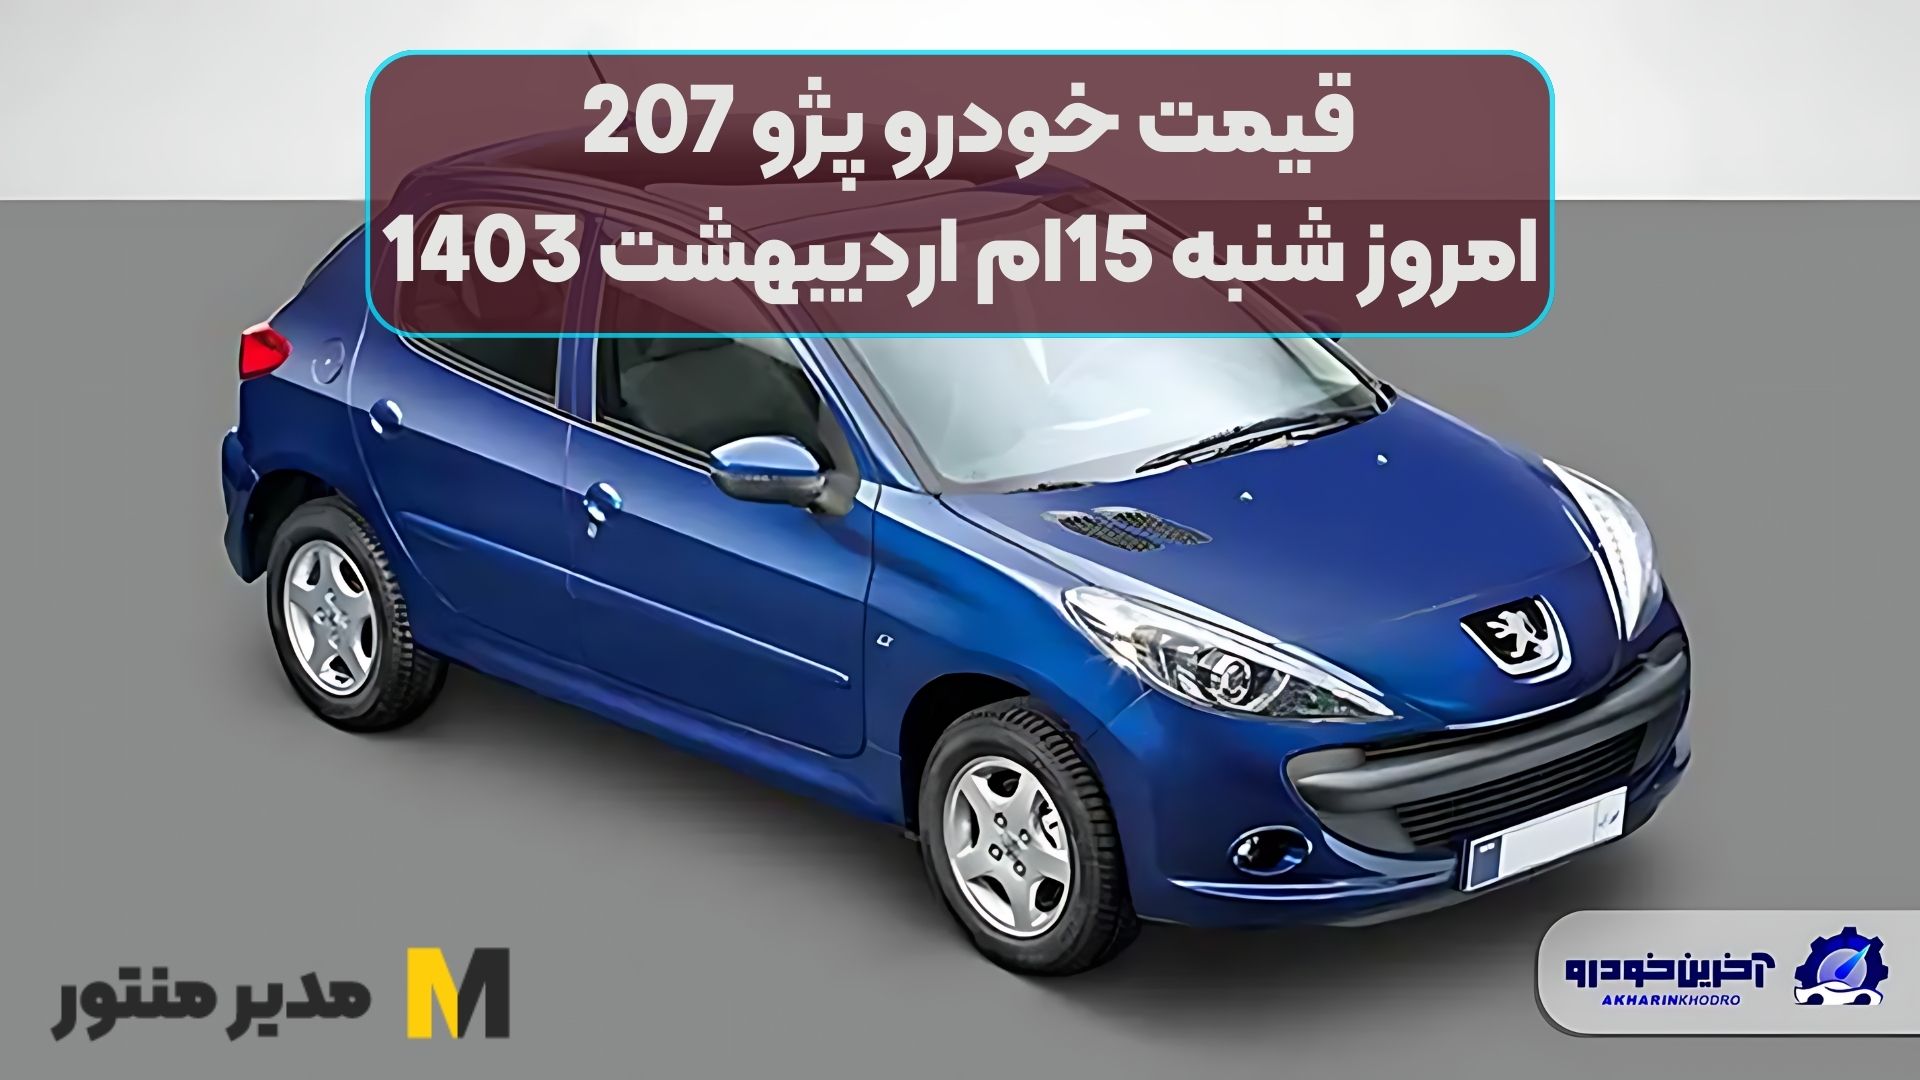 قیمت خودرو پژو 207 امروز شنبه 15ام اردیبهشت 1403